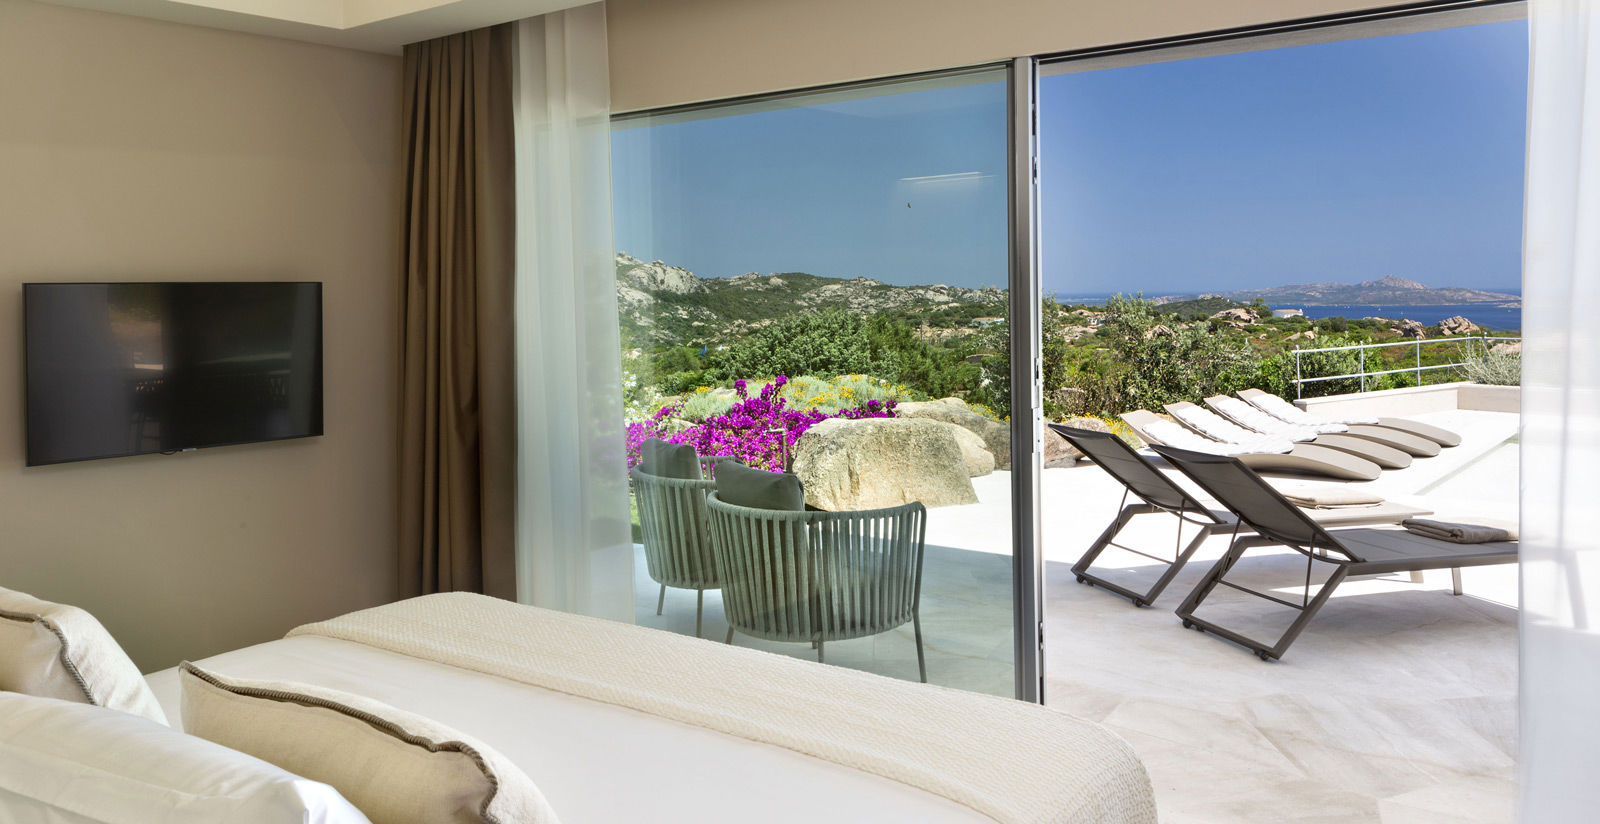 5-star hotel with villas in Costa Smeralda Sardinia 12